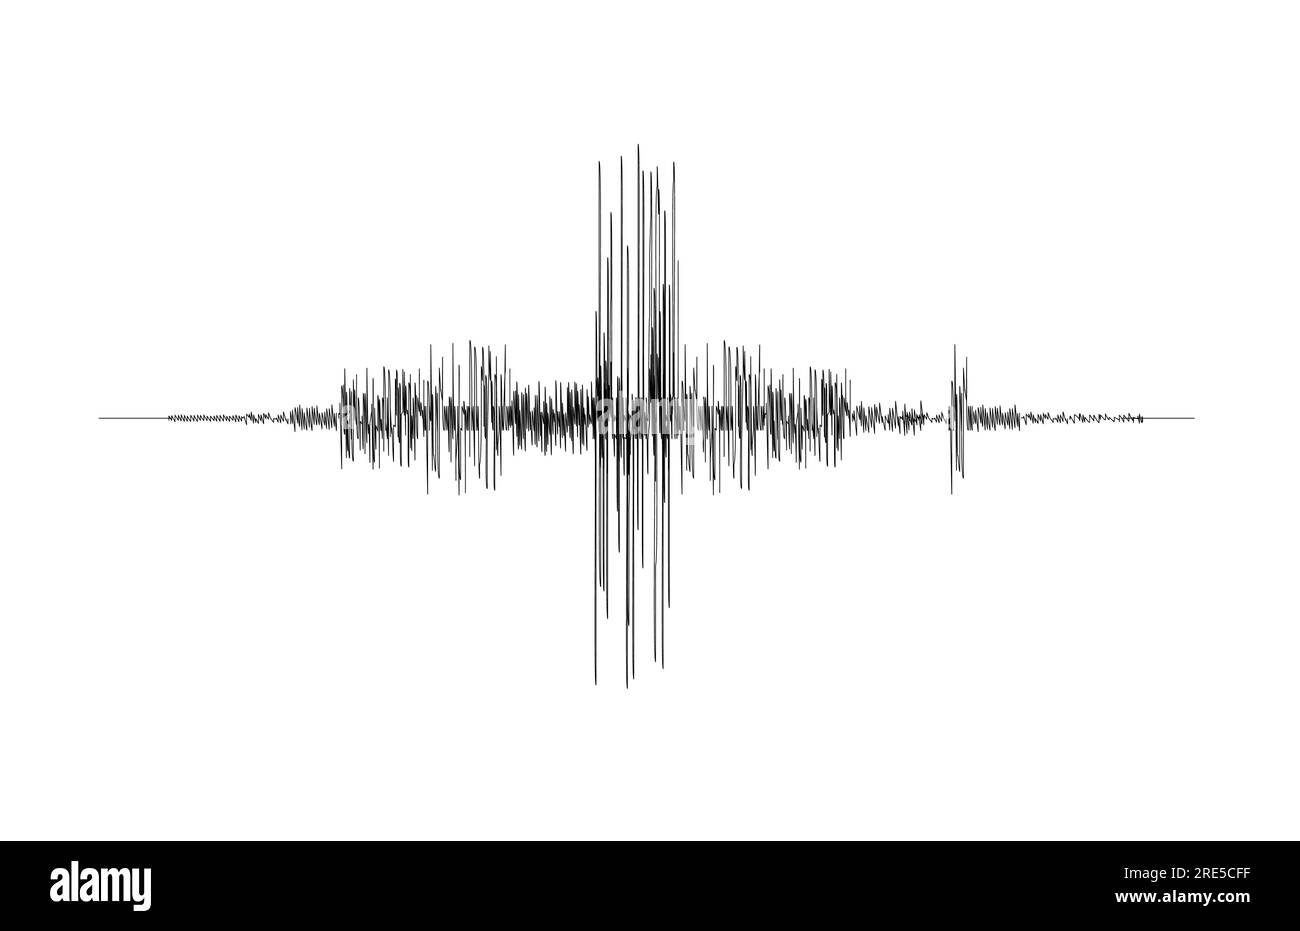 Onda sismografica sismica sismica vettoriale, forma d'onda di attività sismica, suono di vibrazione sismica. Sismogramma sismometrico con grafico nero o grafico della registrazione del terremoto, diagramma dell'onda sonora di magnitudine sismica Illustrazione Vettoriale